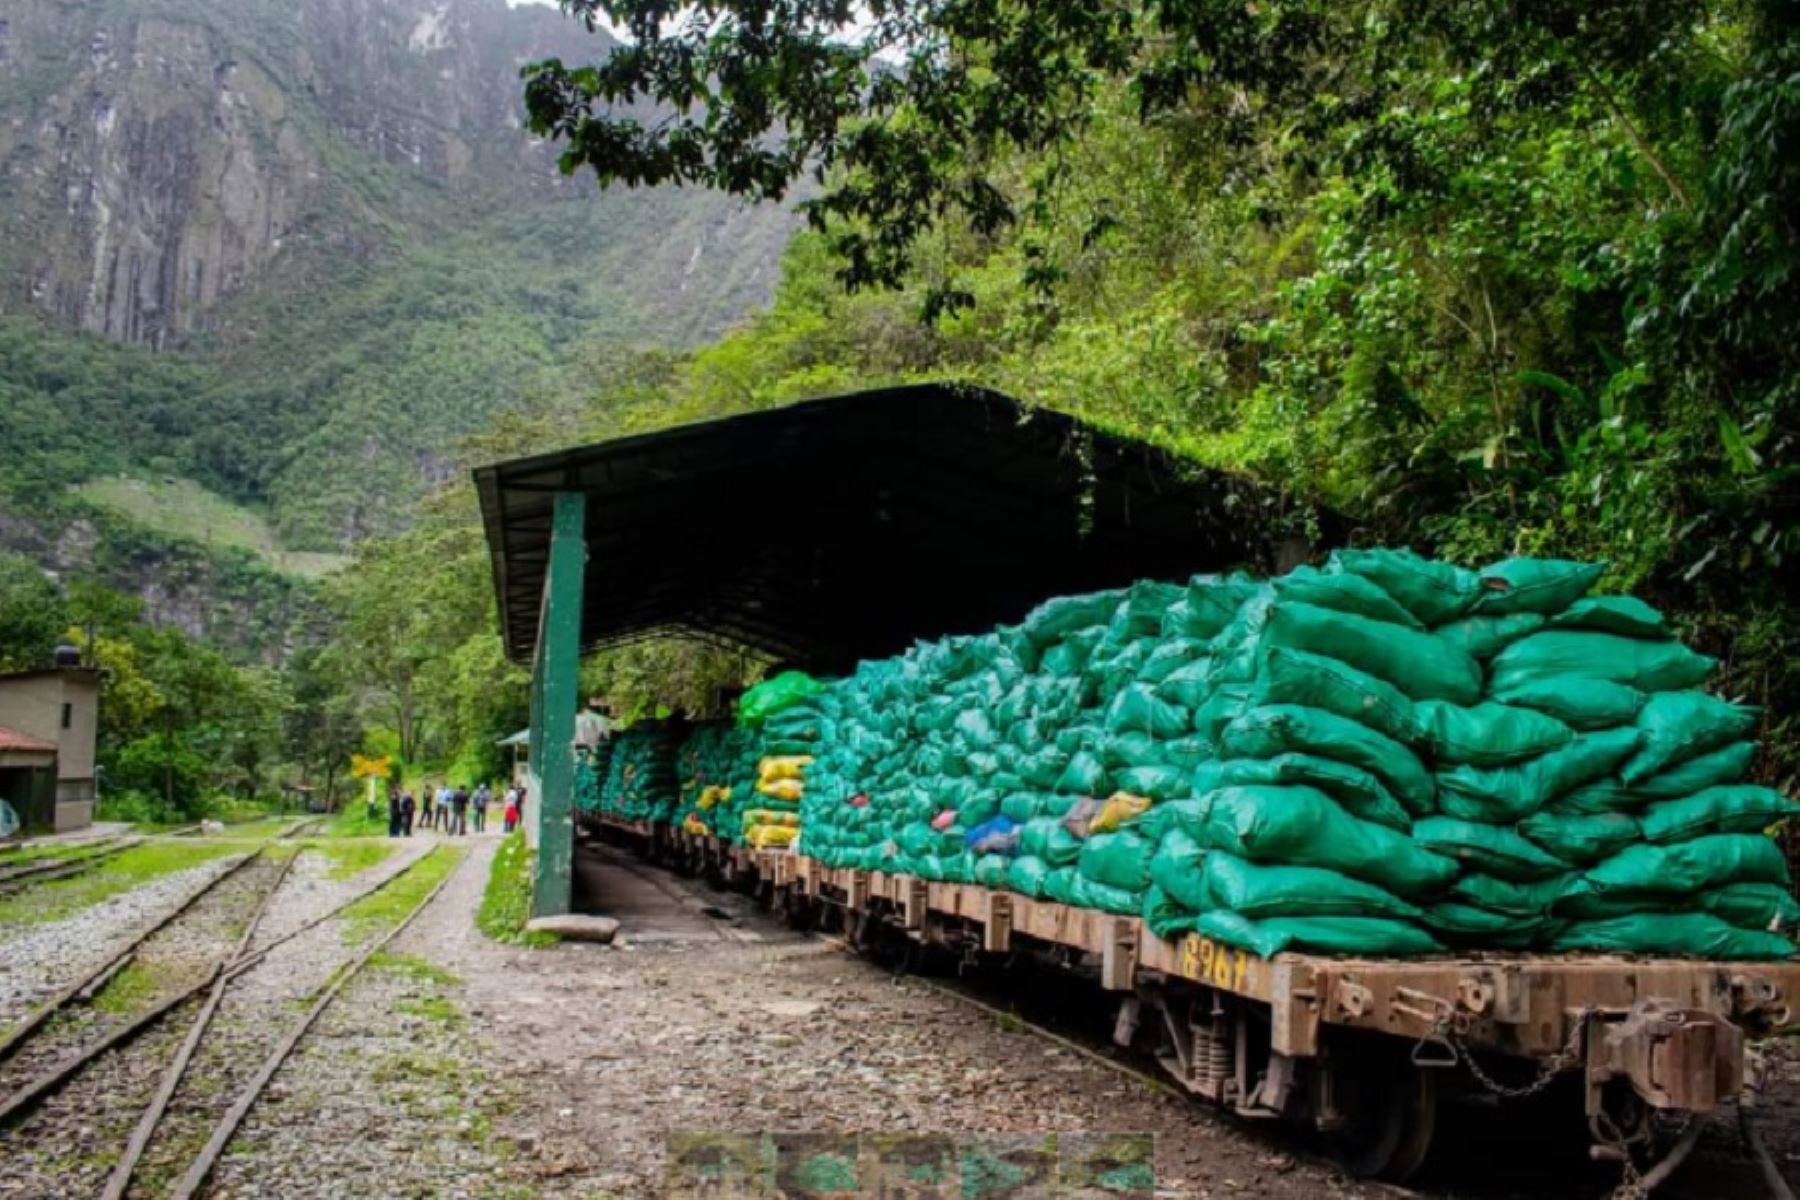 Alrededor de 60 toneladas de residuos sólidos que se generaron en el distrito de Machu Picchu, provincia cusqueña de Urubamba, fueron retirados por la empresa ferroviaria PerúRail.